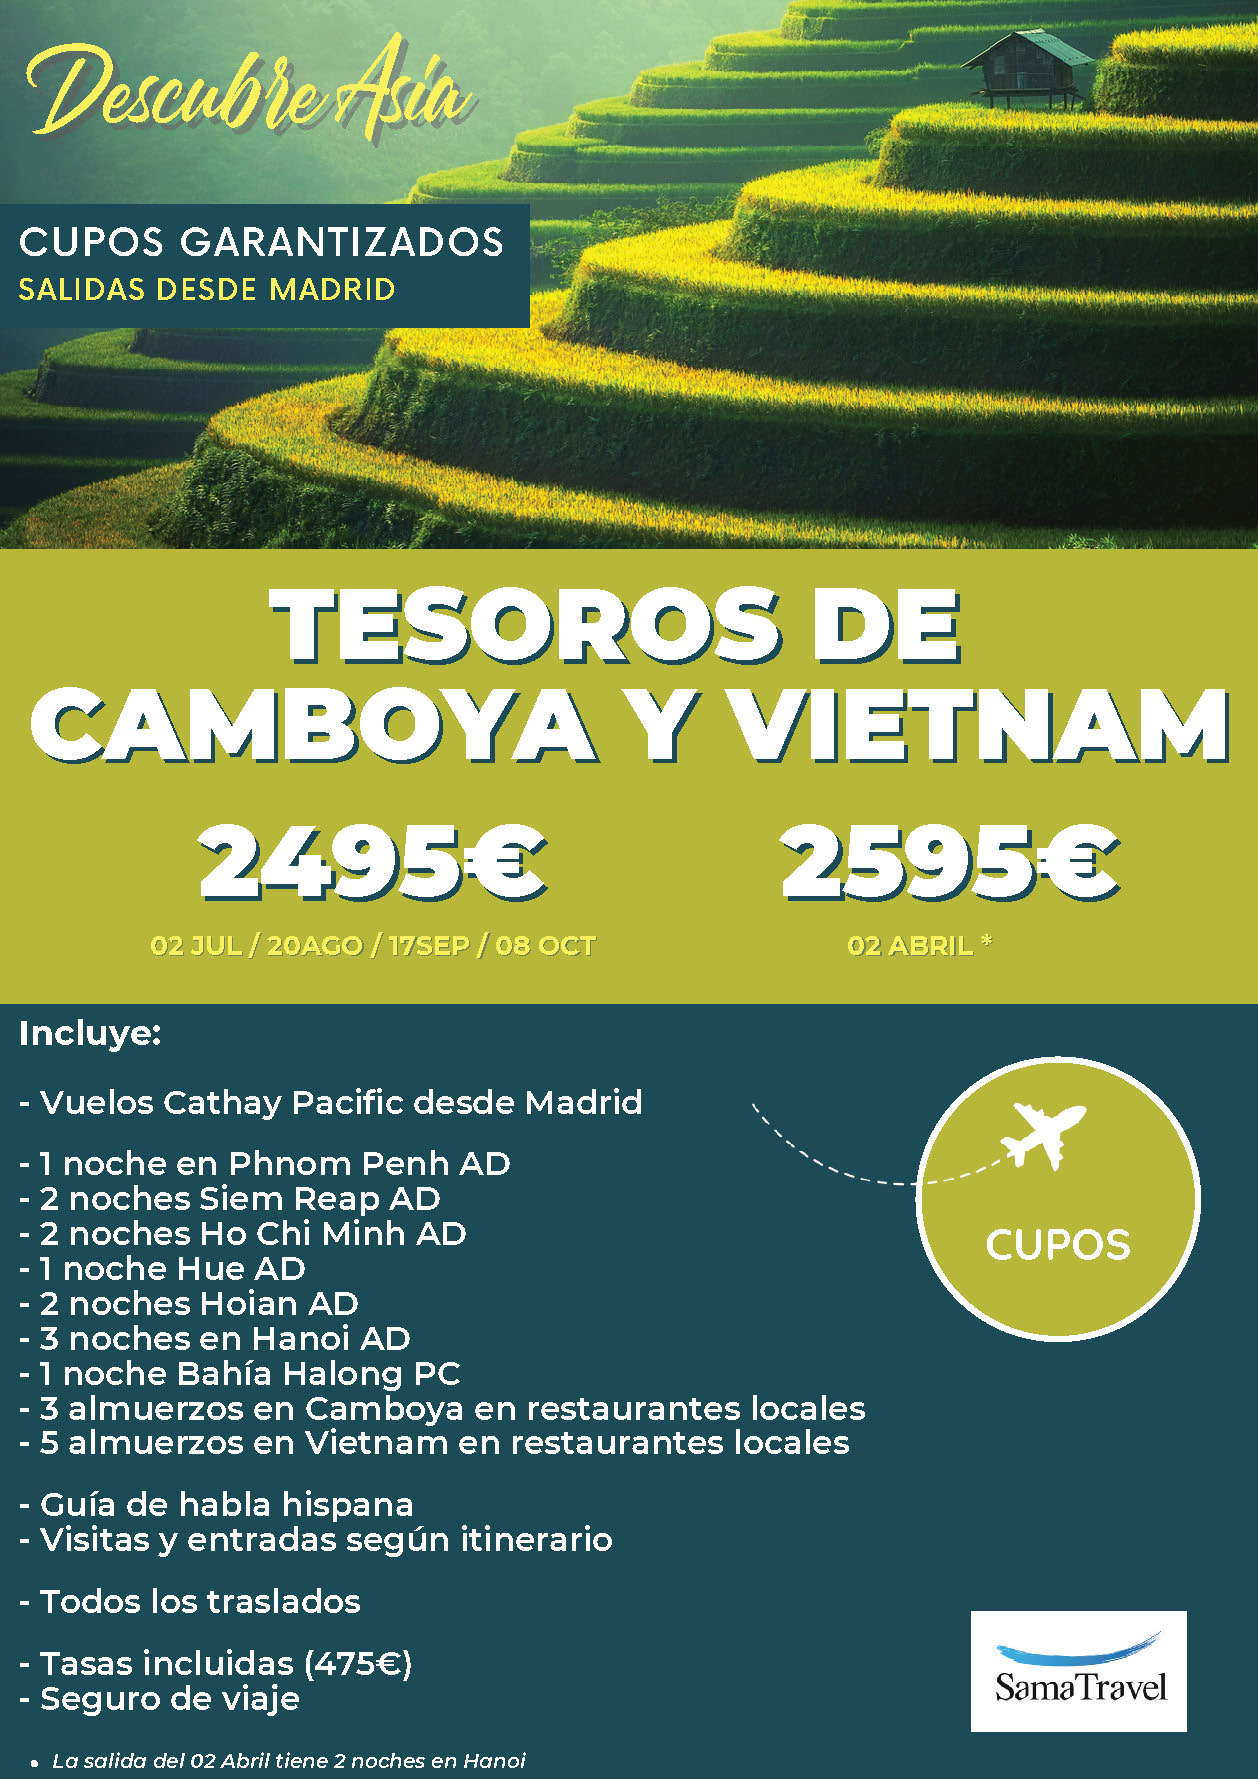 Ofertas Sama Travel Verano 2023 circuito Vietnam y Camboya 13 dias salidas desde Madrid vuelos Cathay Pacific